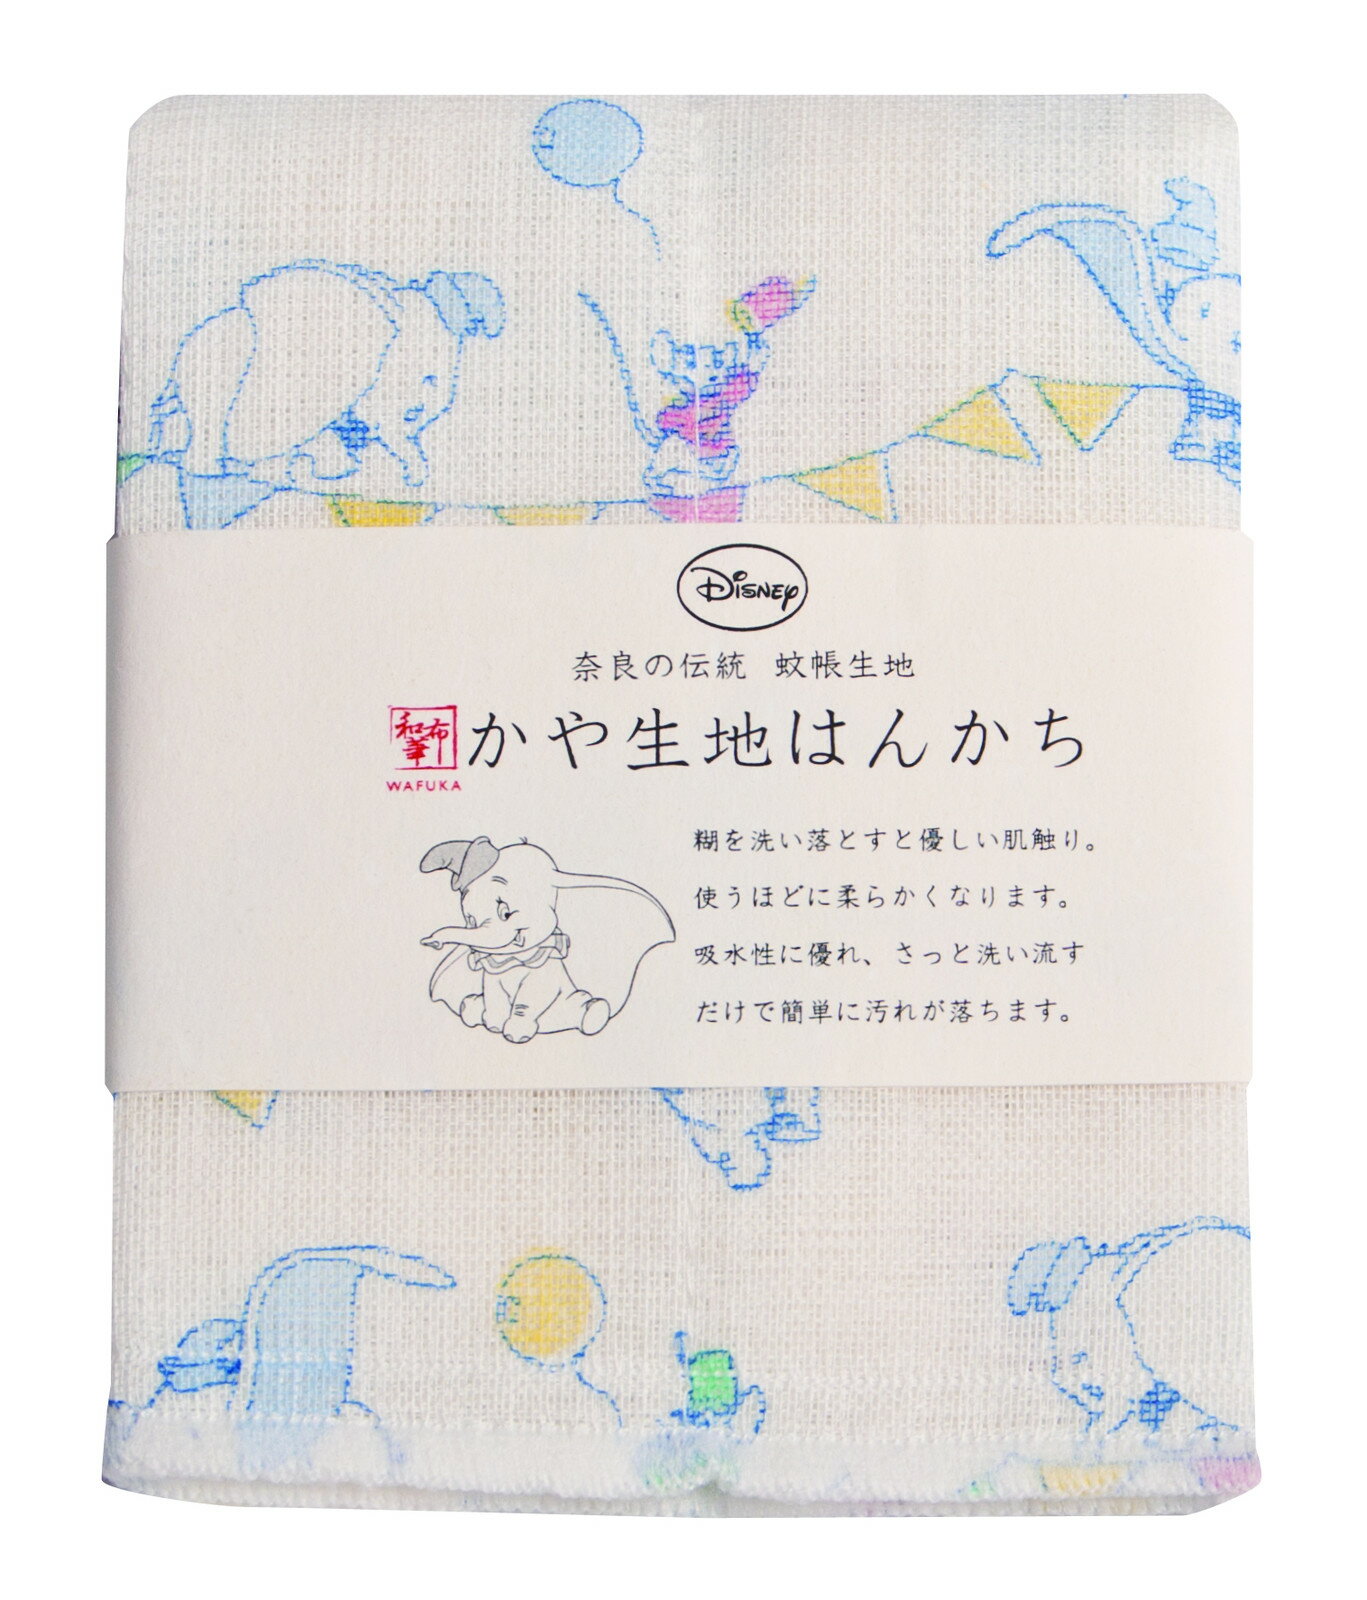 【震撼精品百貨】Dumbo_小飛象~ 日本迪士尼Disney 小飛象日本製紗布巾 手帕-樂園*11363